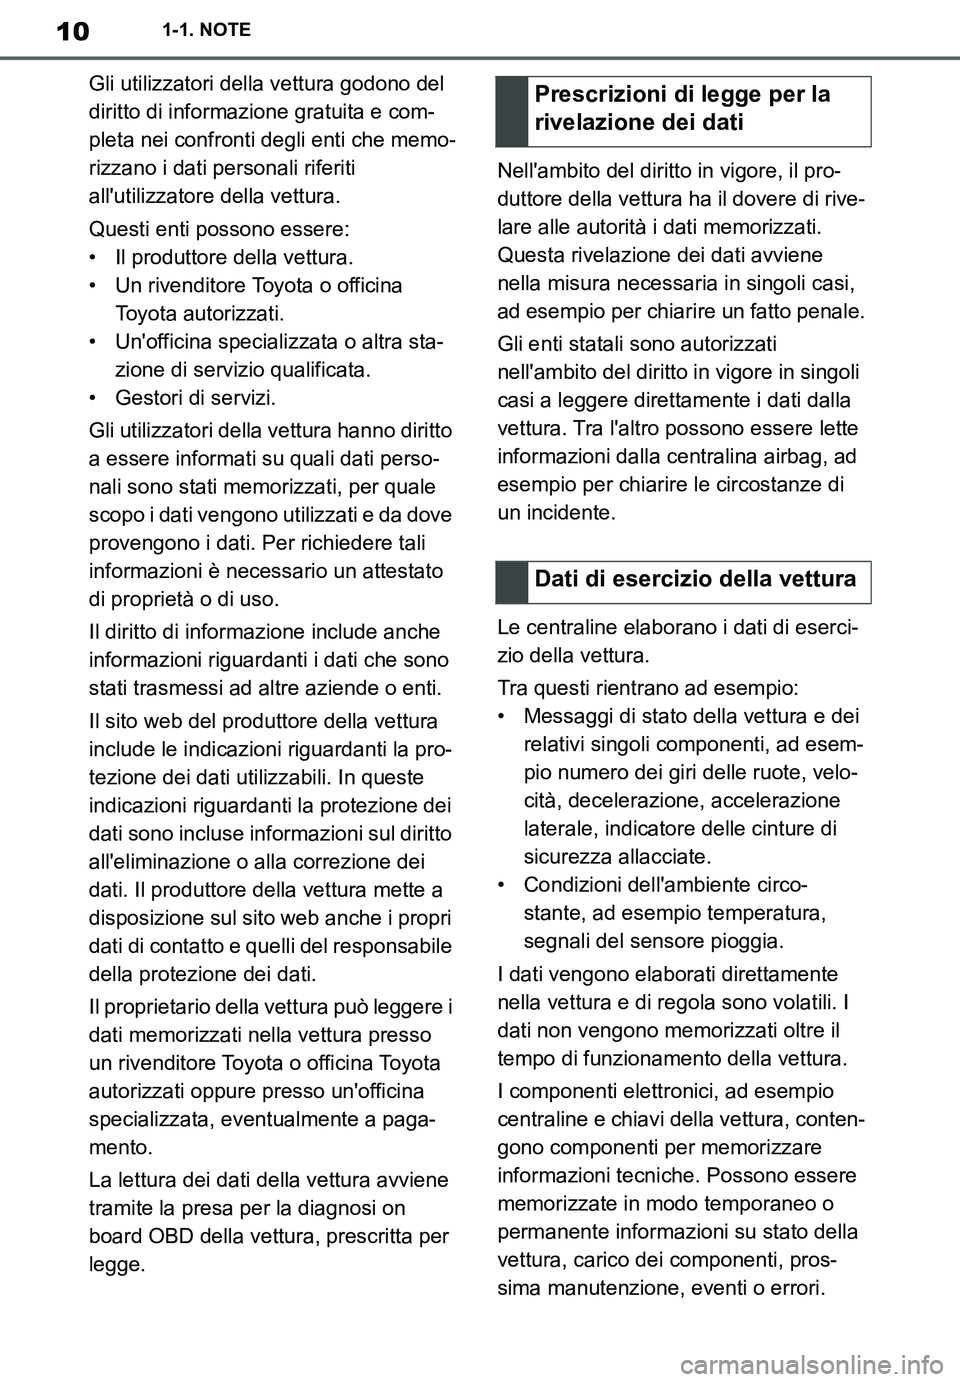 TOYOTA SUPRA 2020  Manuale duso (in Italian) 10
Supra Owners Manual_EL
1-1. NOTE
Gli utilizzatori della vettura godono del 
diritto di informazione gratuita e com-
pleta nei confronti degli enti che memo-
rizzano i dati personali riferiti 
all